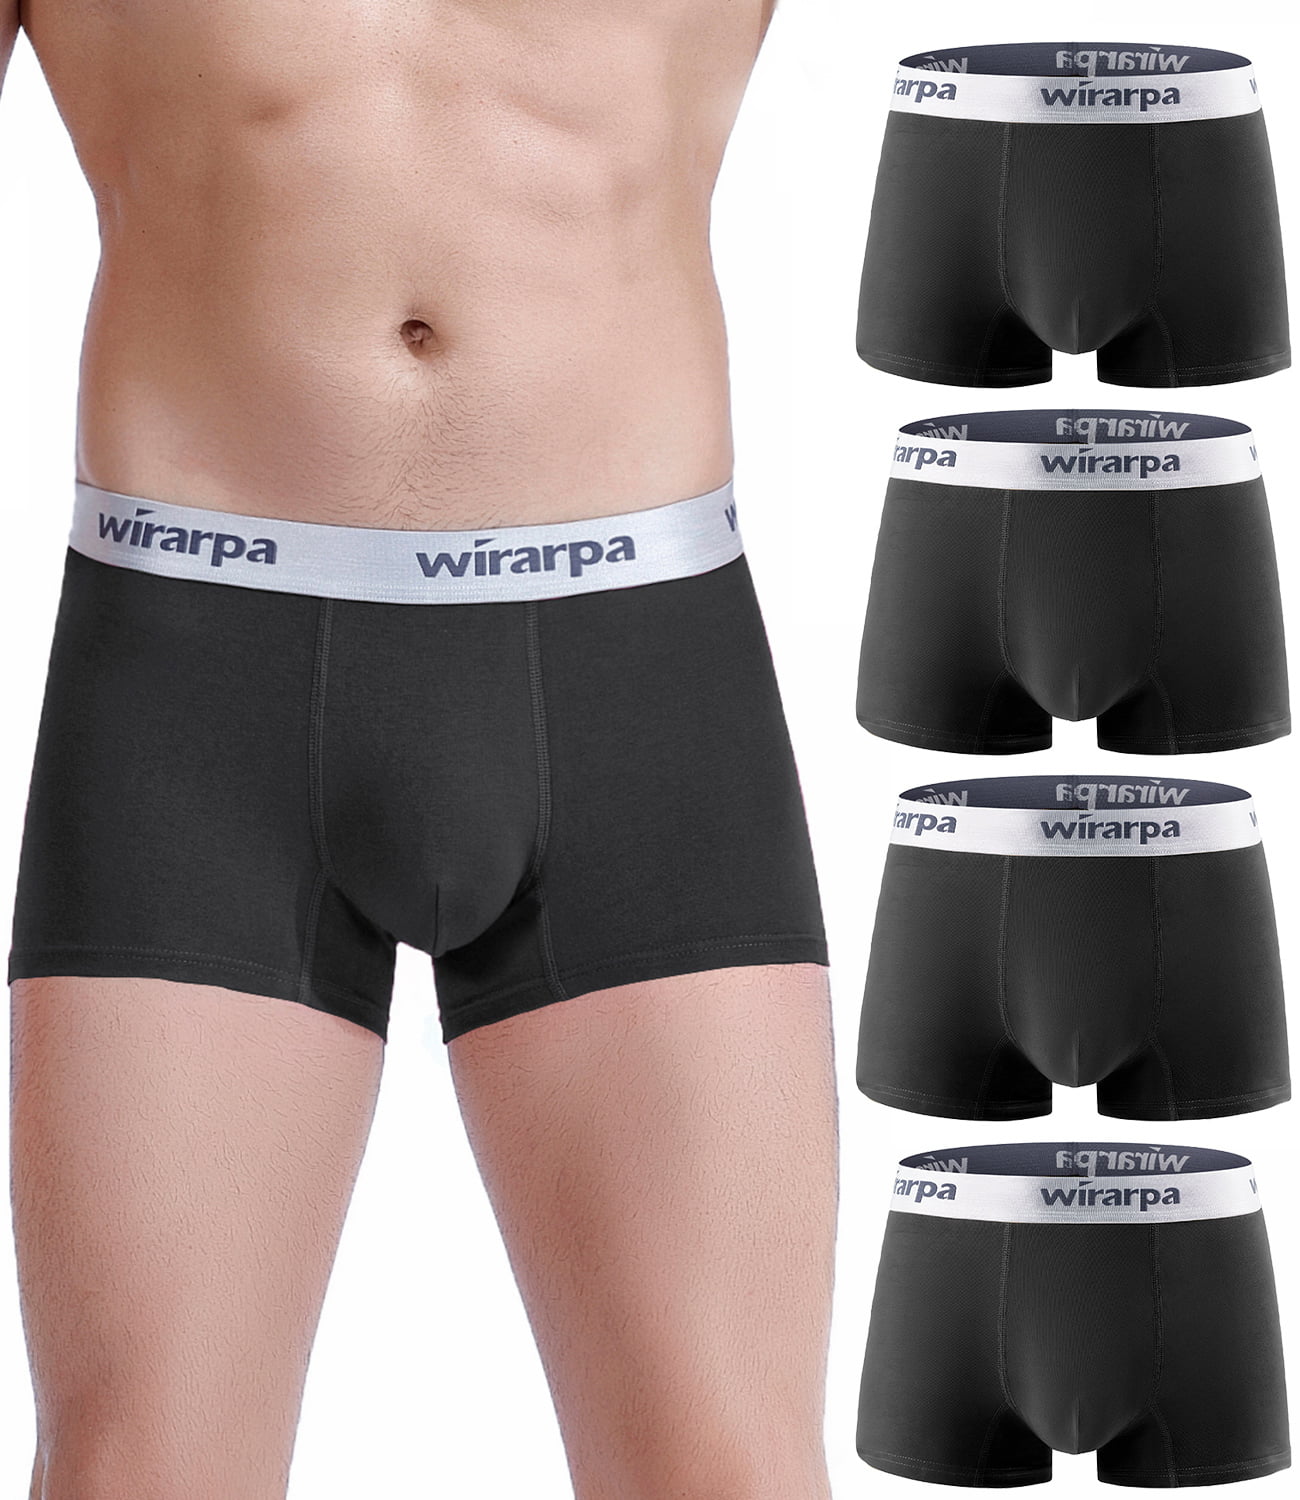 wirarpa Men's Cotton Stretch Underwear Support Briefs Wide Waistband Multipack 